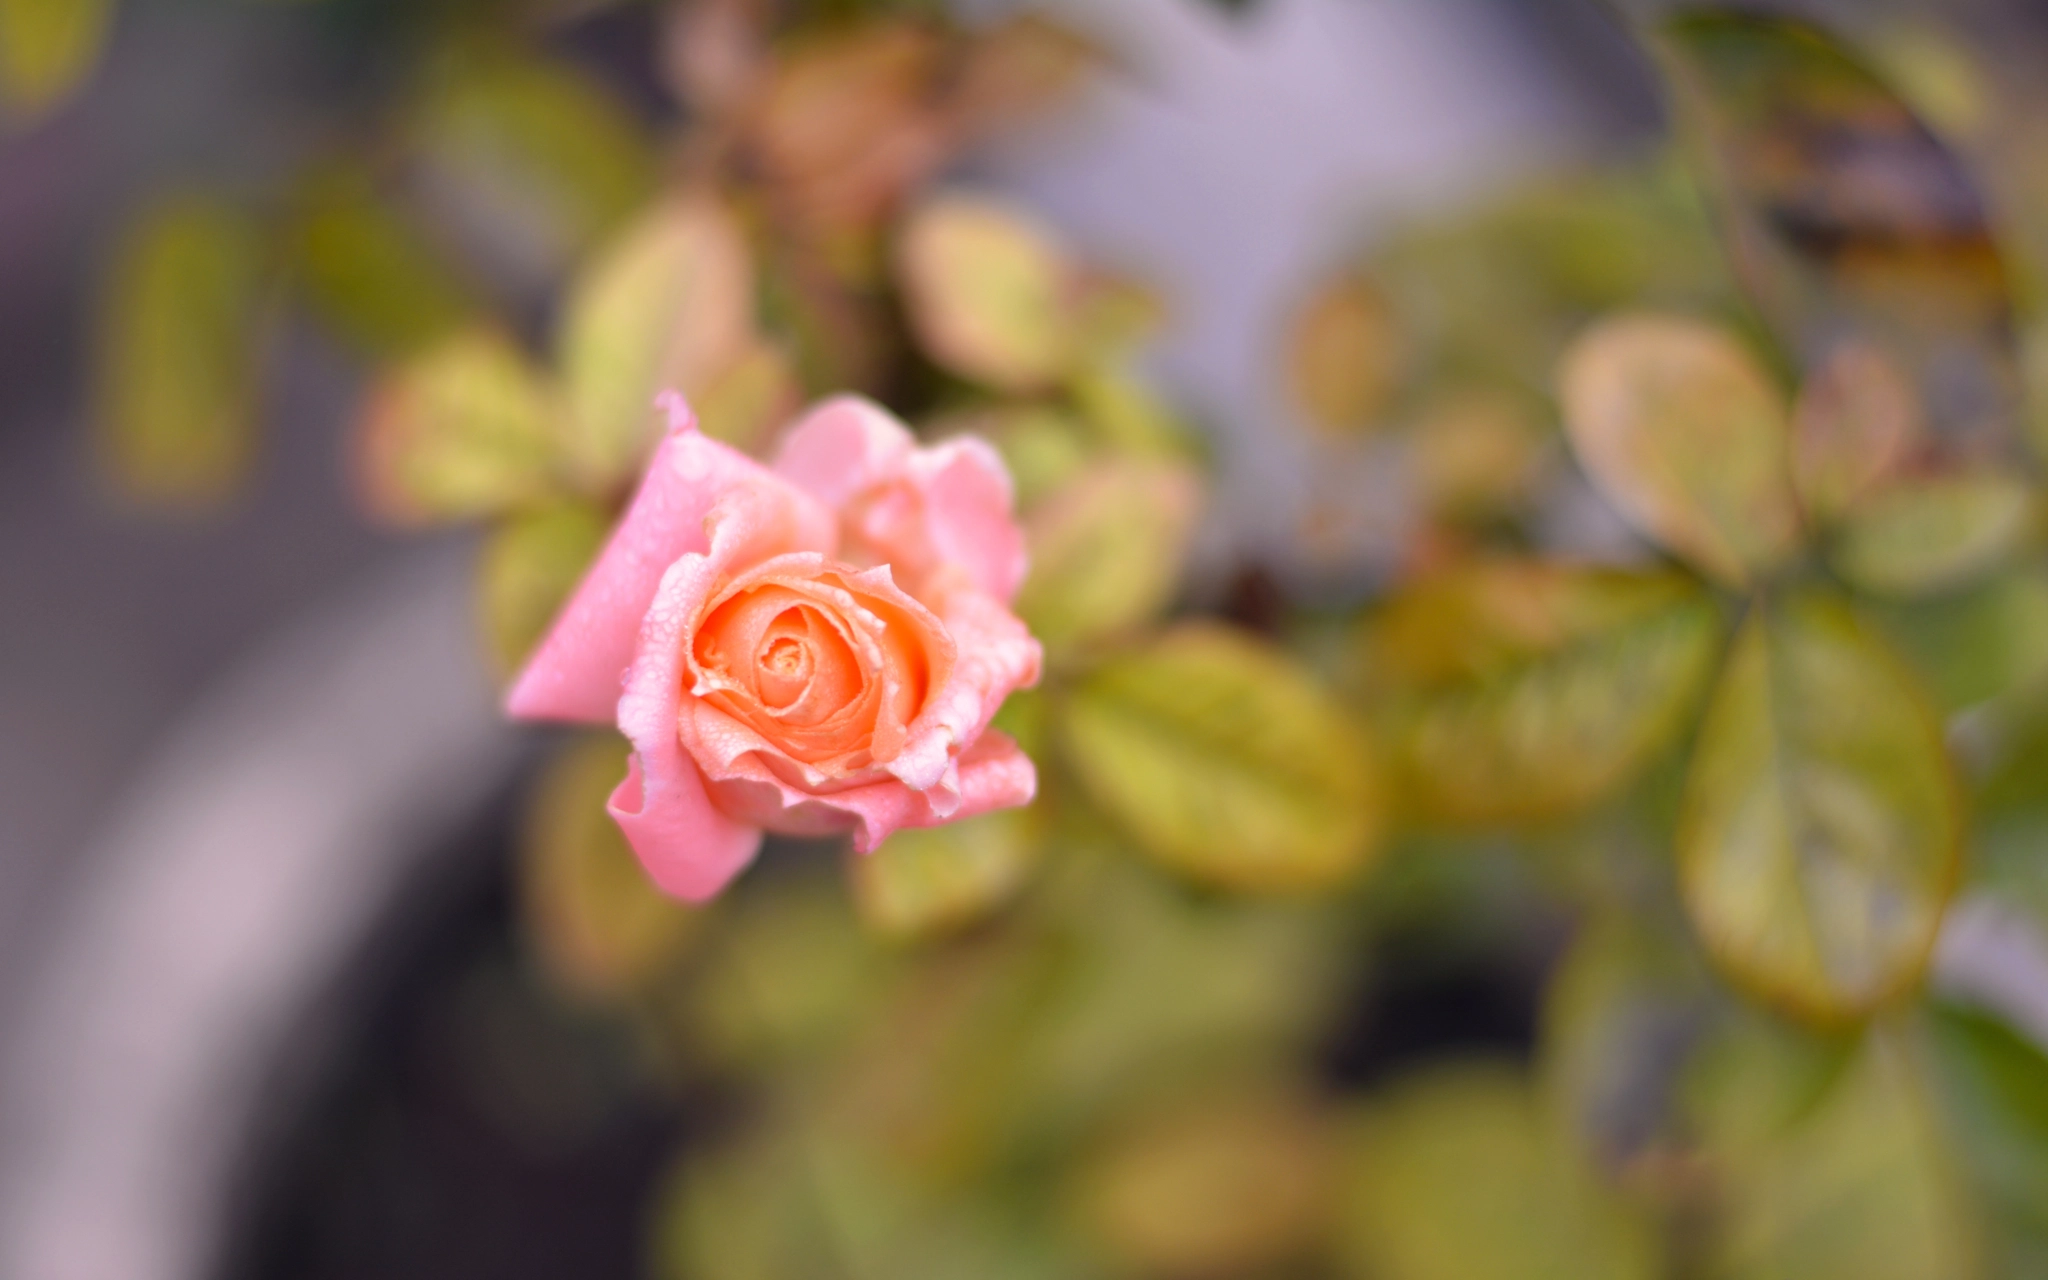 Nikon D5200 + AF Zoom-Nikkor 35-80mm f/4-5.6D sample photo. Morning rose. photography